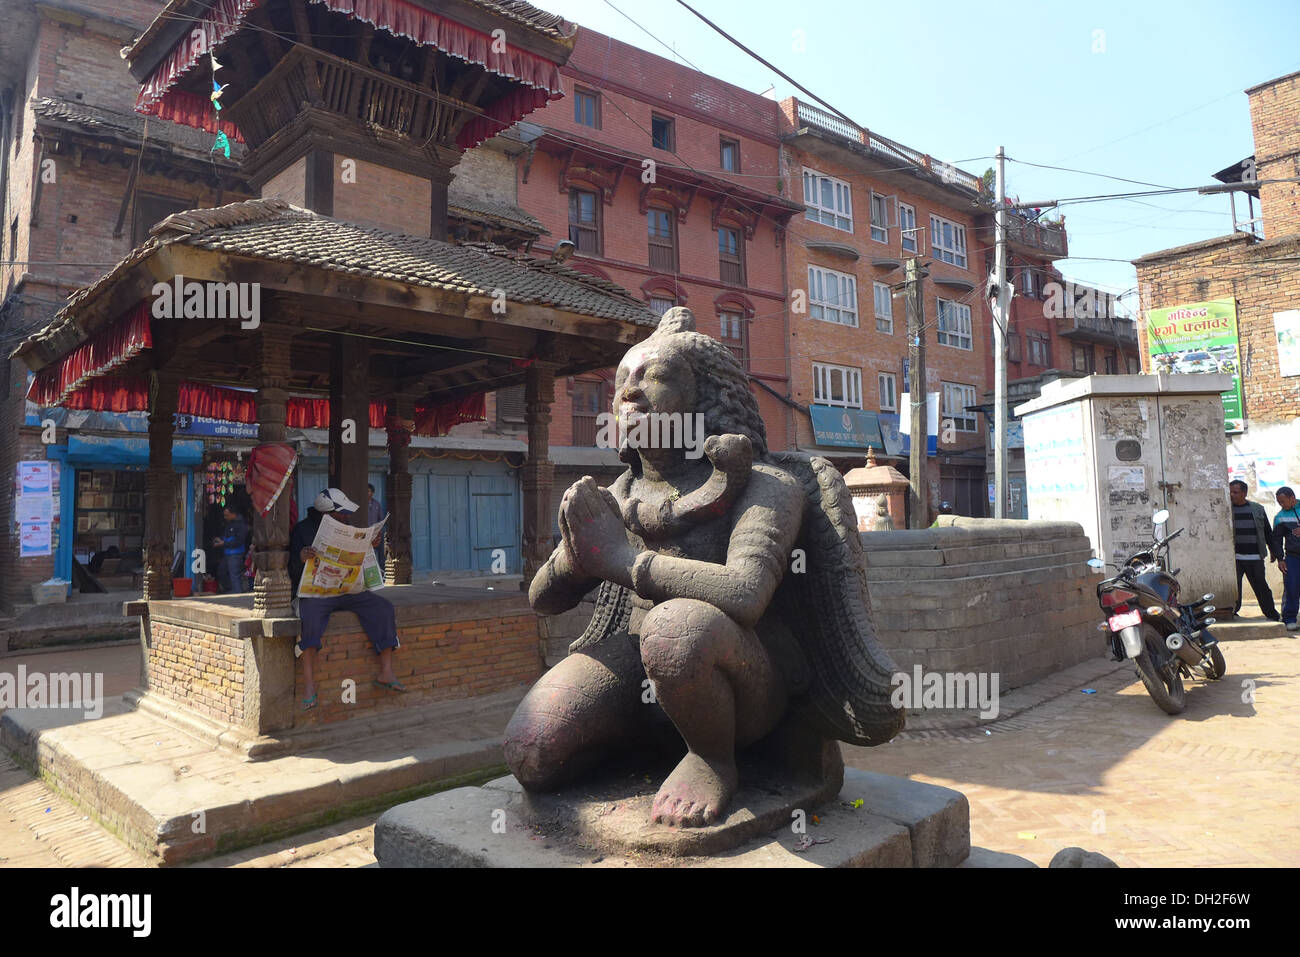 Le Népal Bakhtapur, une ville historique dans la vallée de Katmandou et l'UNESCO World Heritage site. Statue de Vishnu. Banque D'Images